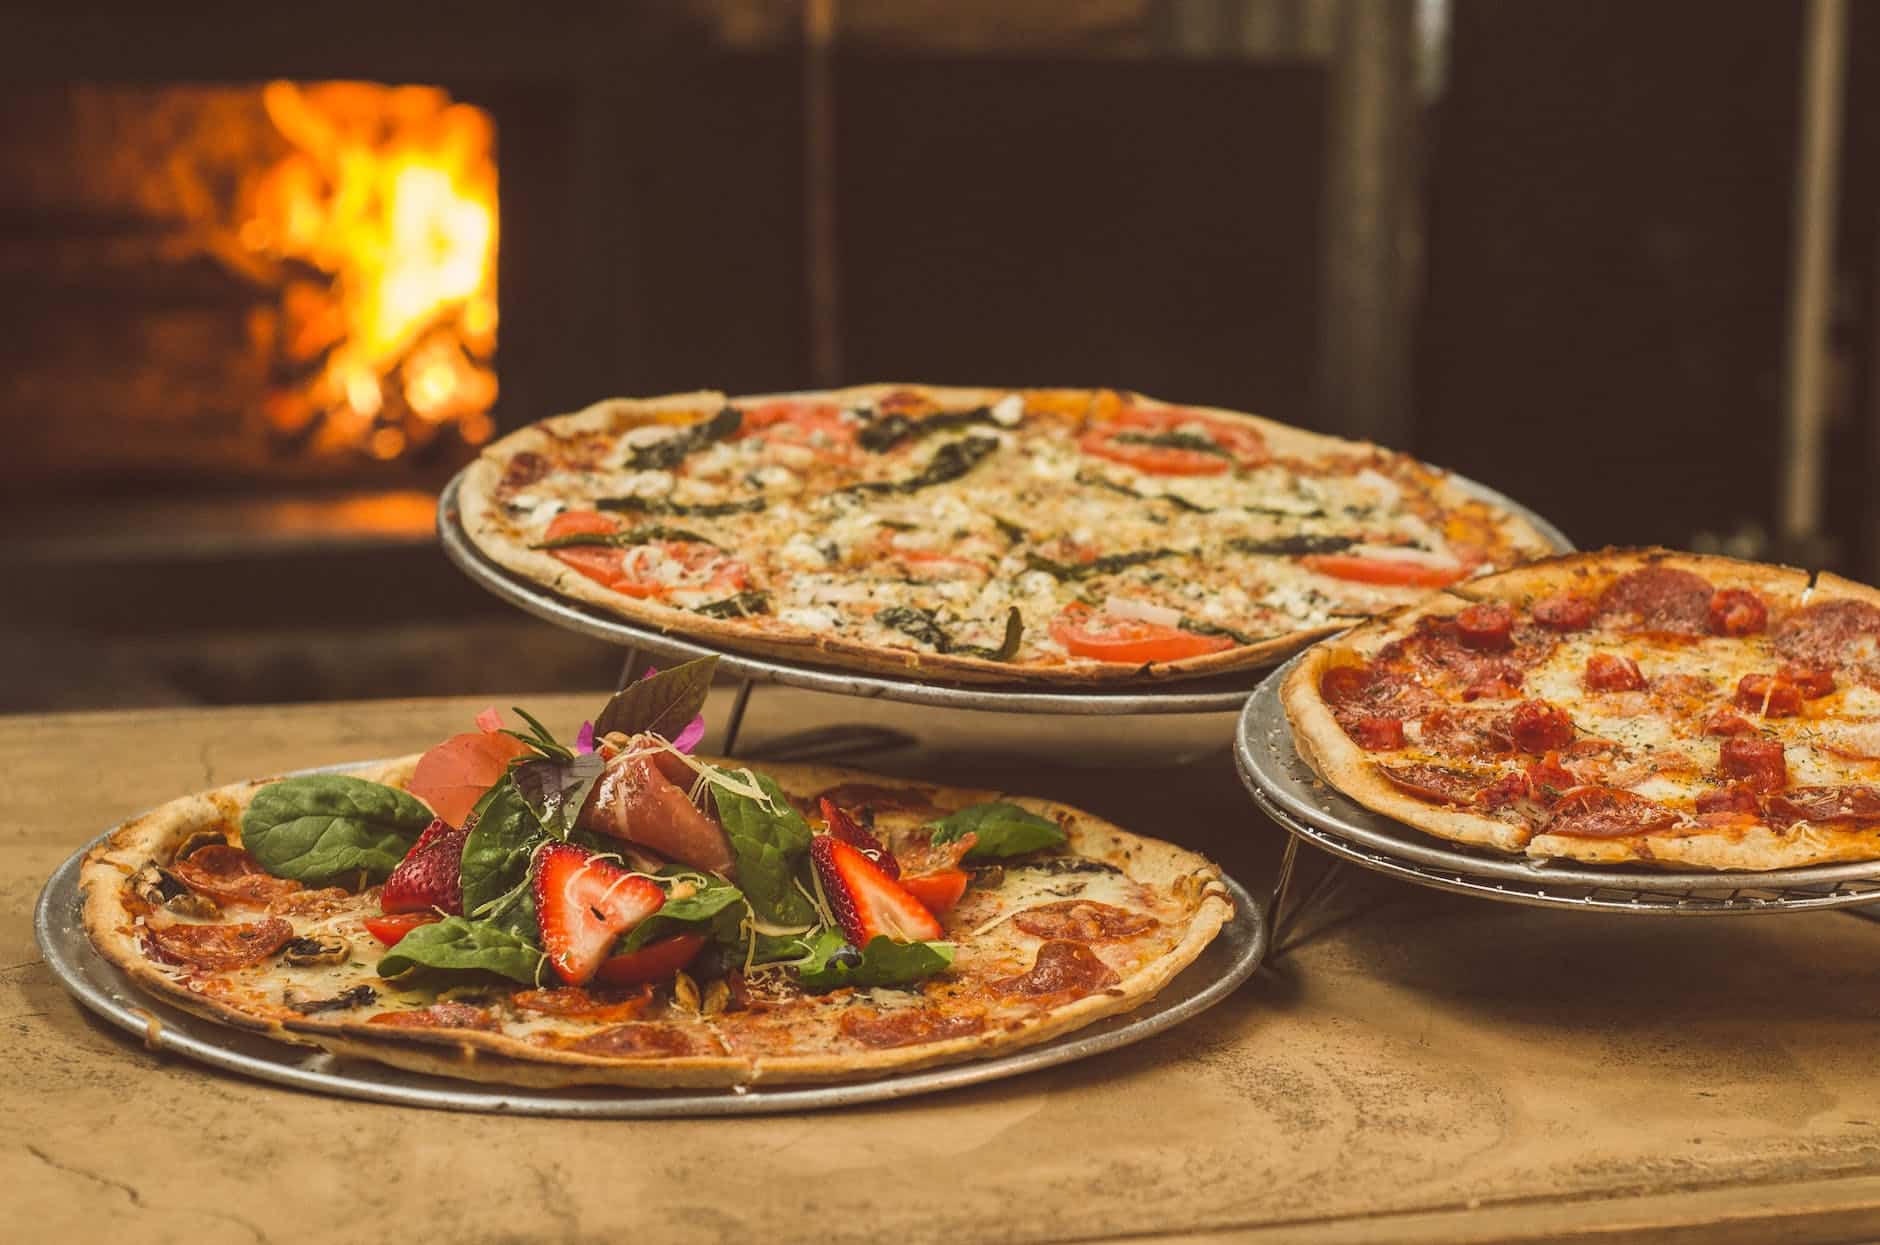 Pizza Cornicione – What Is Cornicione and How to Make It?